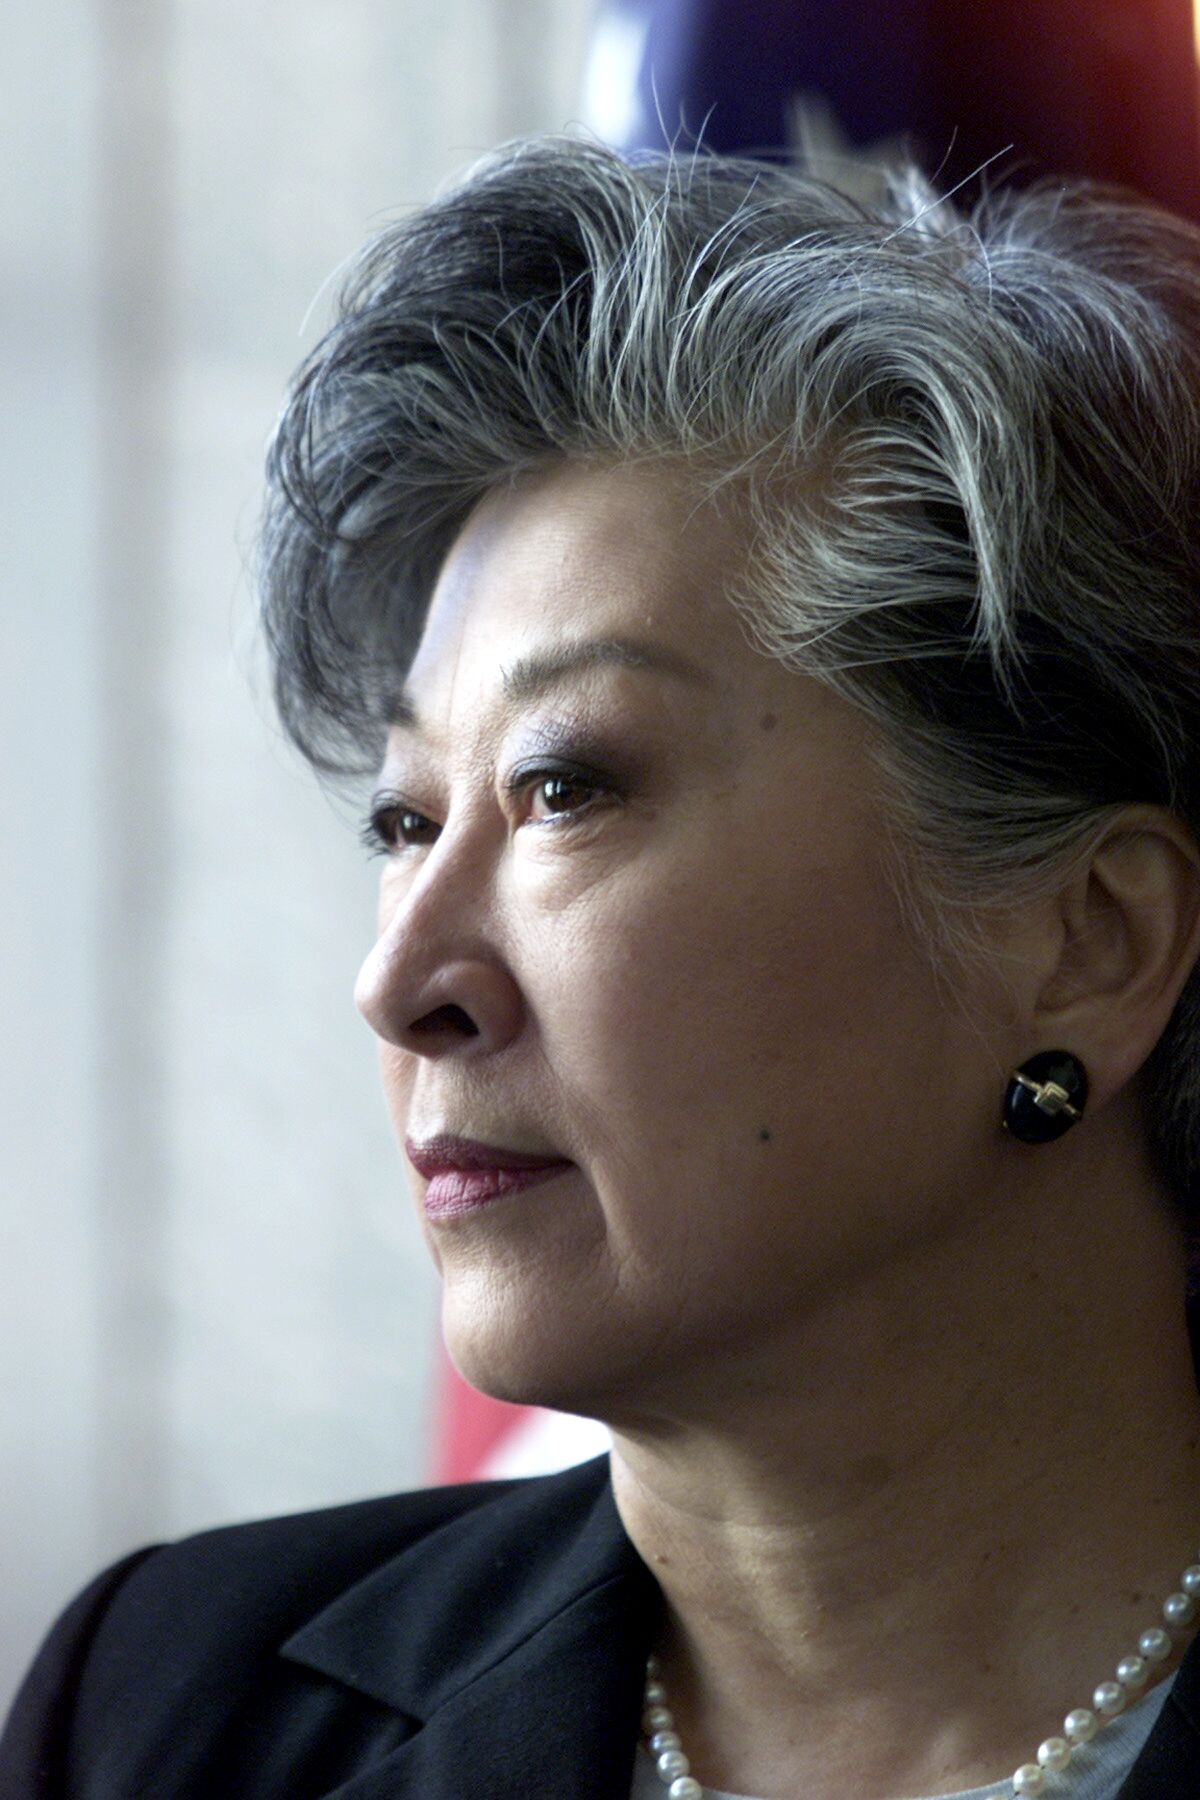 Rose Matsui Ochi in 2001.